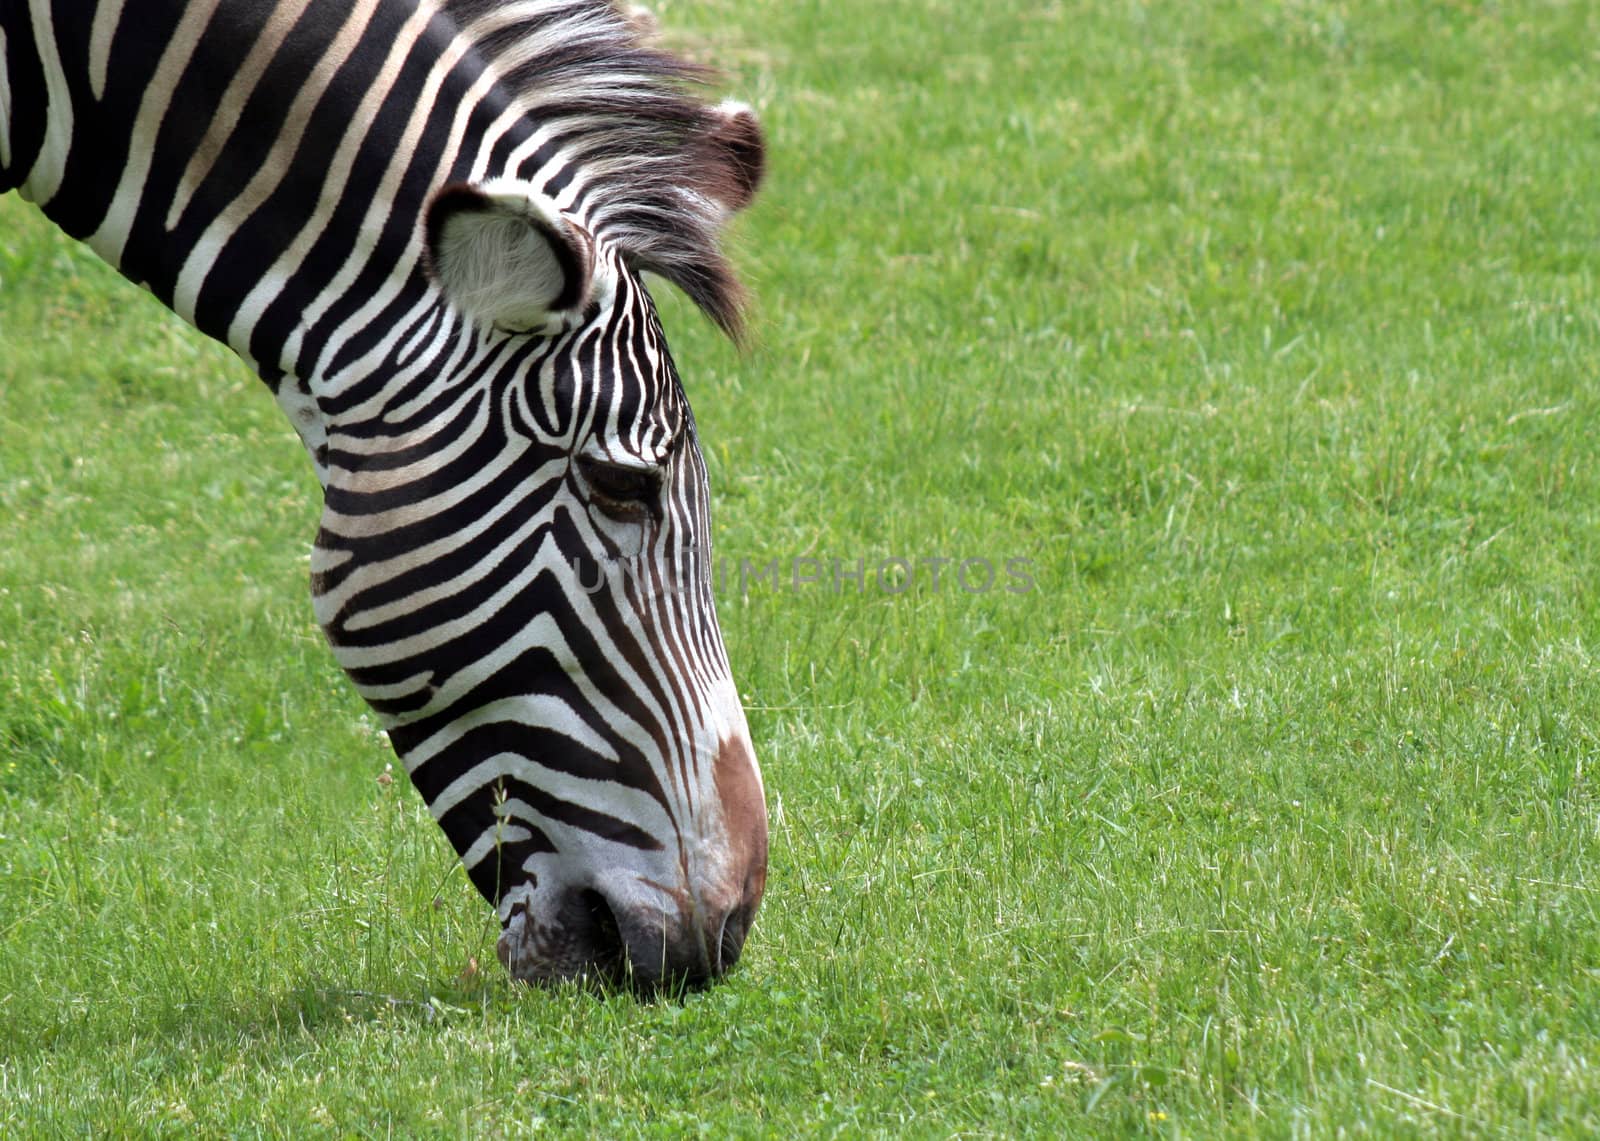 A zebra grazing on green grass.